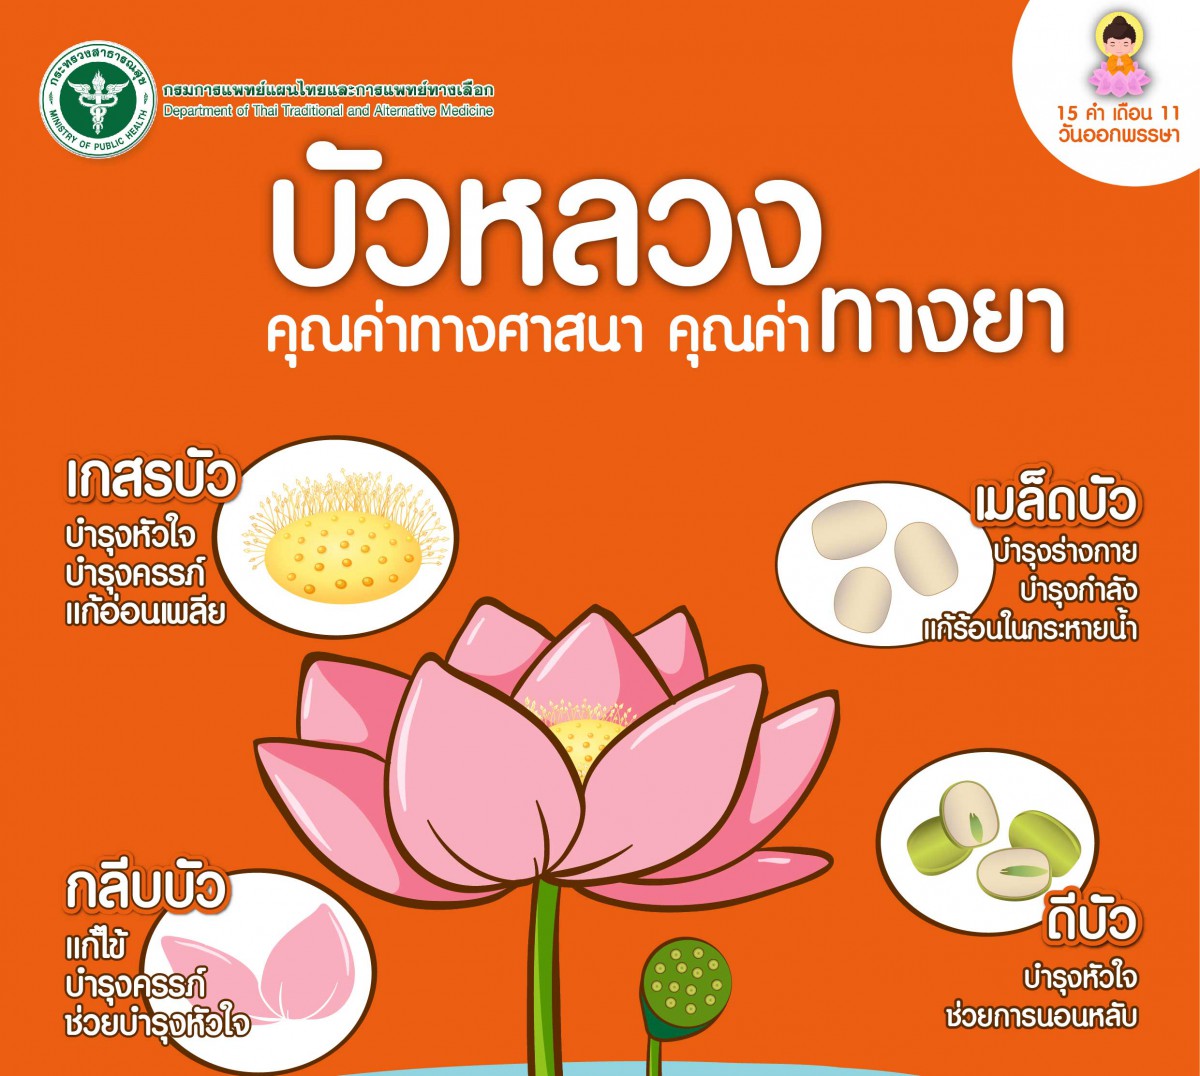 แพทย์แผนไทยเผยสรรพคุณบัวหลวงดอกไม้ถวายพระช่วยดูแลสุขภาพ